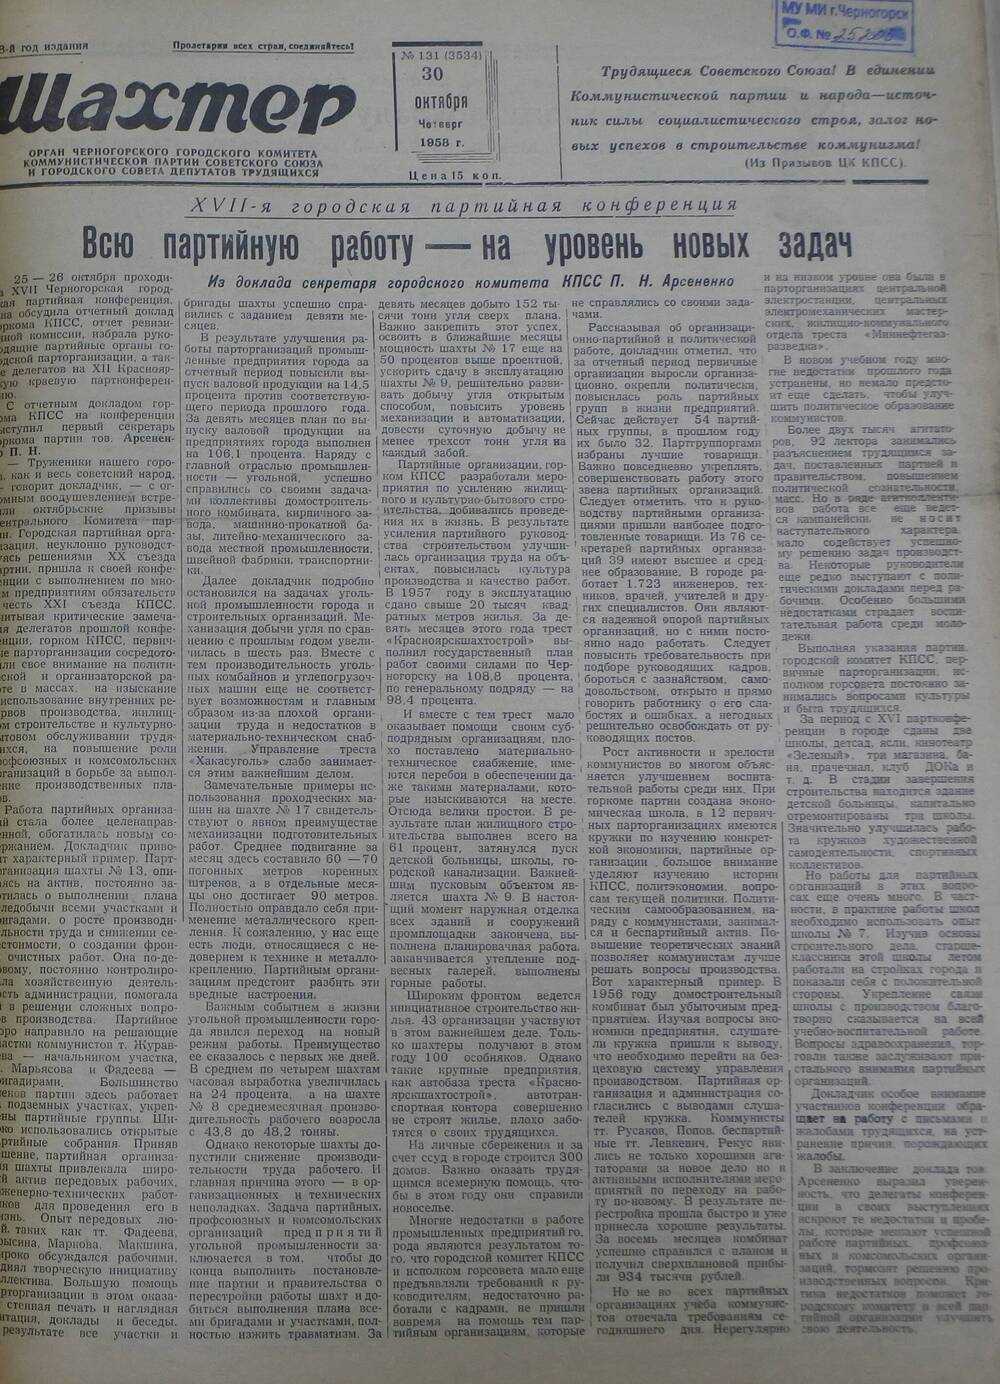 Газета «Шахтер». Выпуск № 131 от 30.10.1958 г.